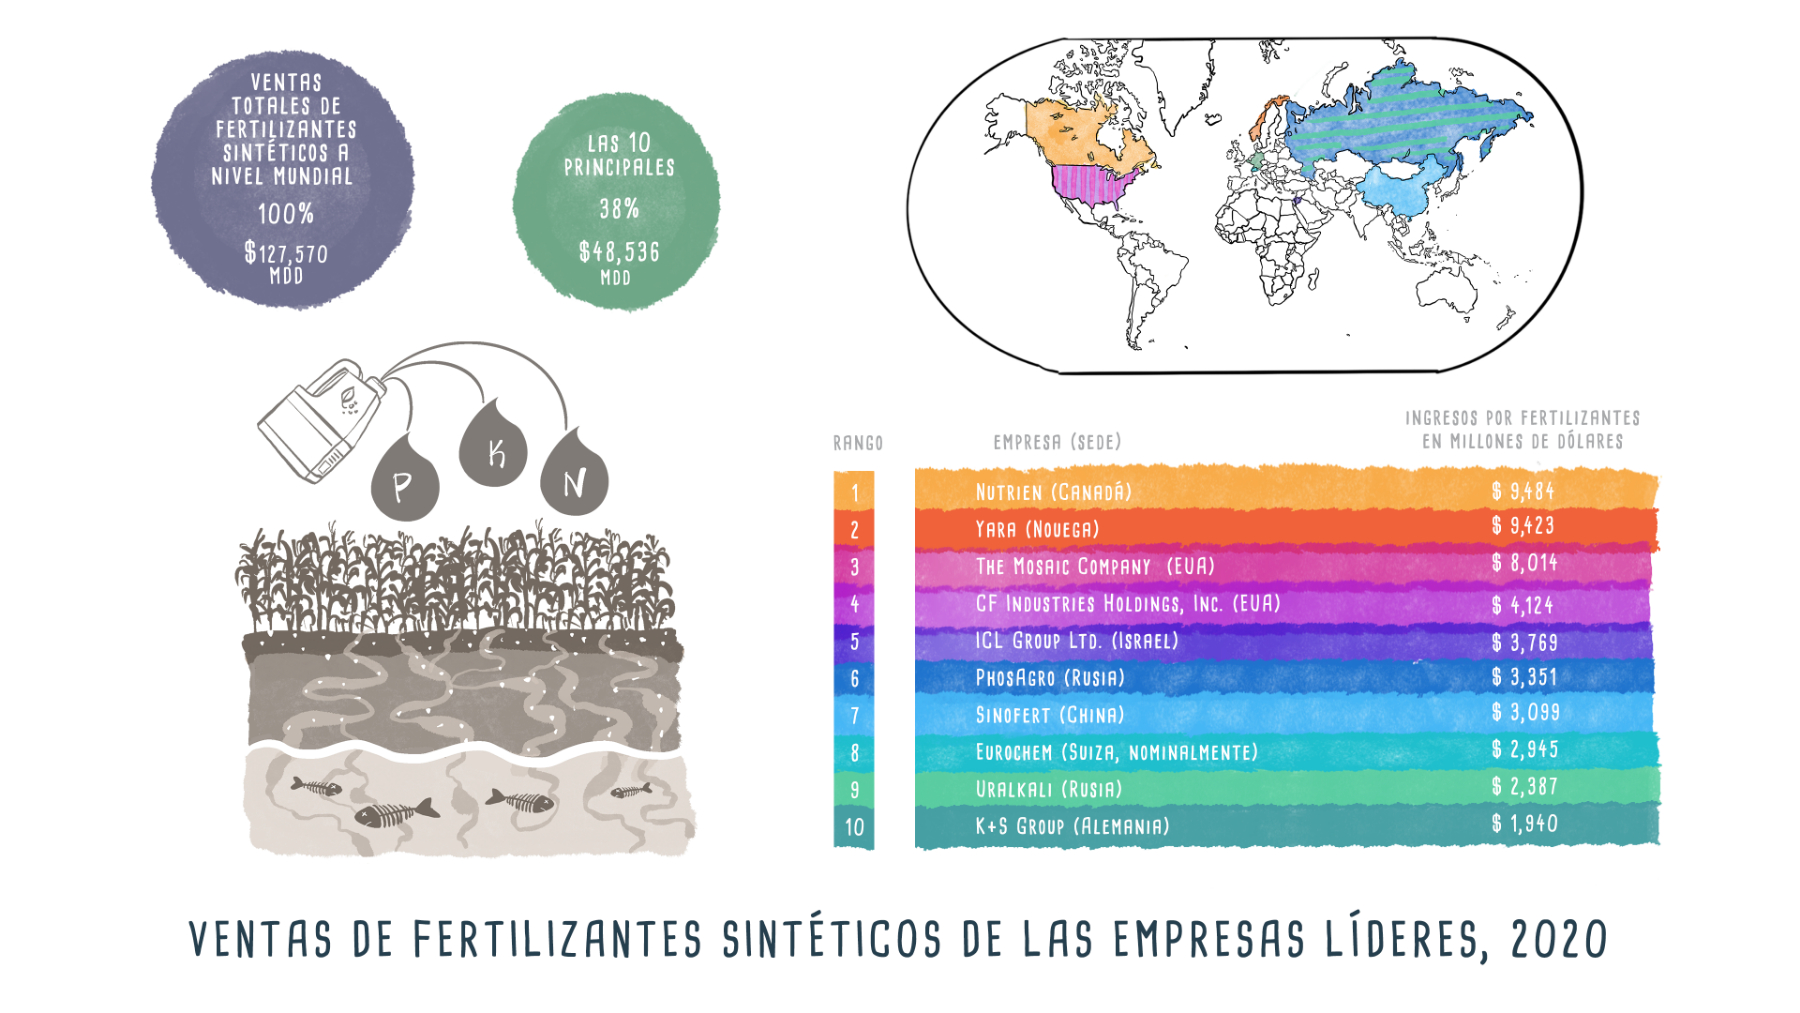 Fertilizantes sintéticos - Infográfico